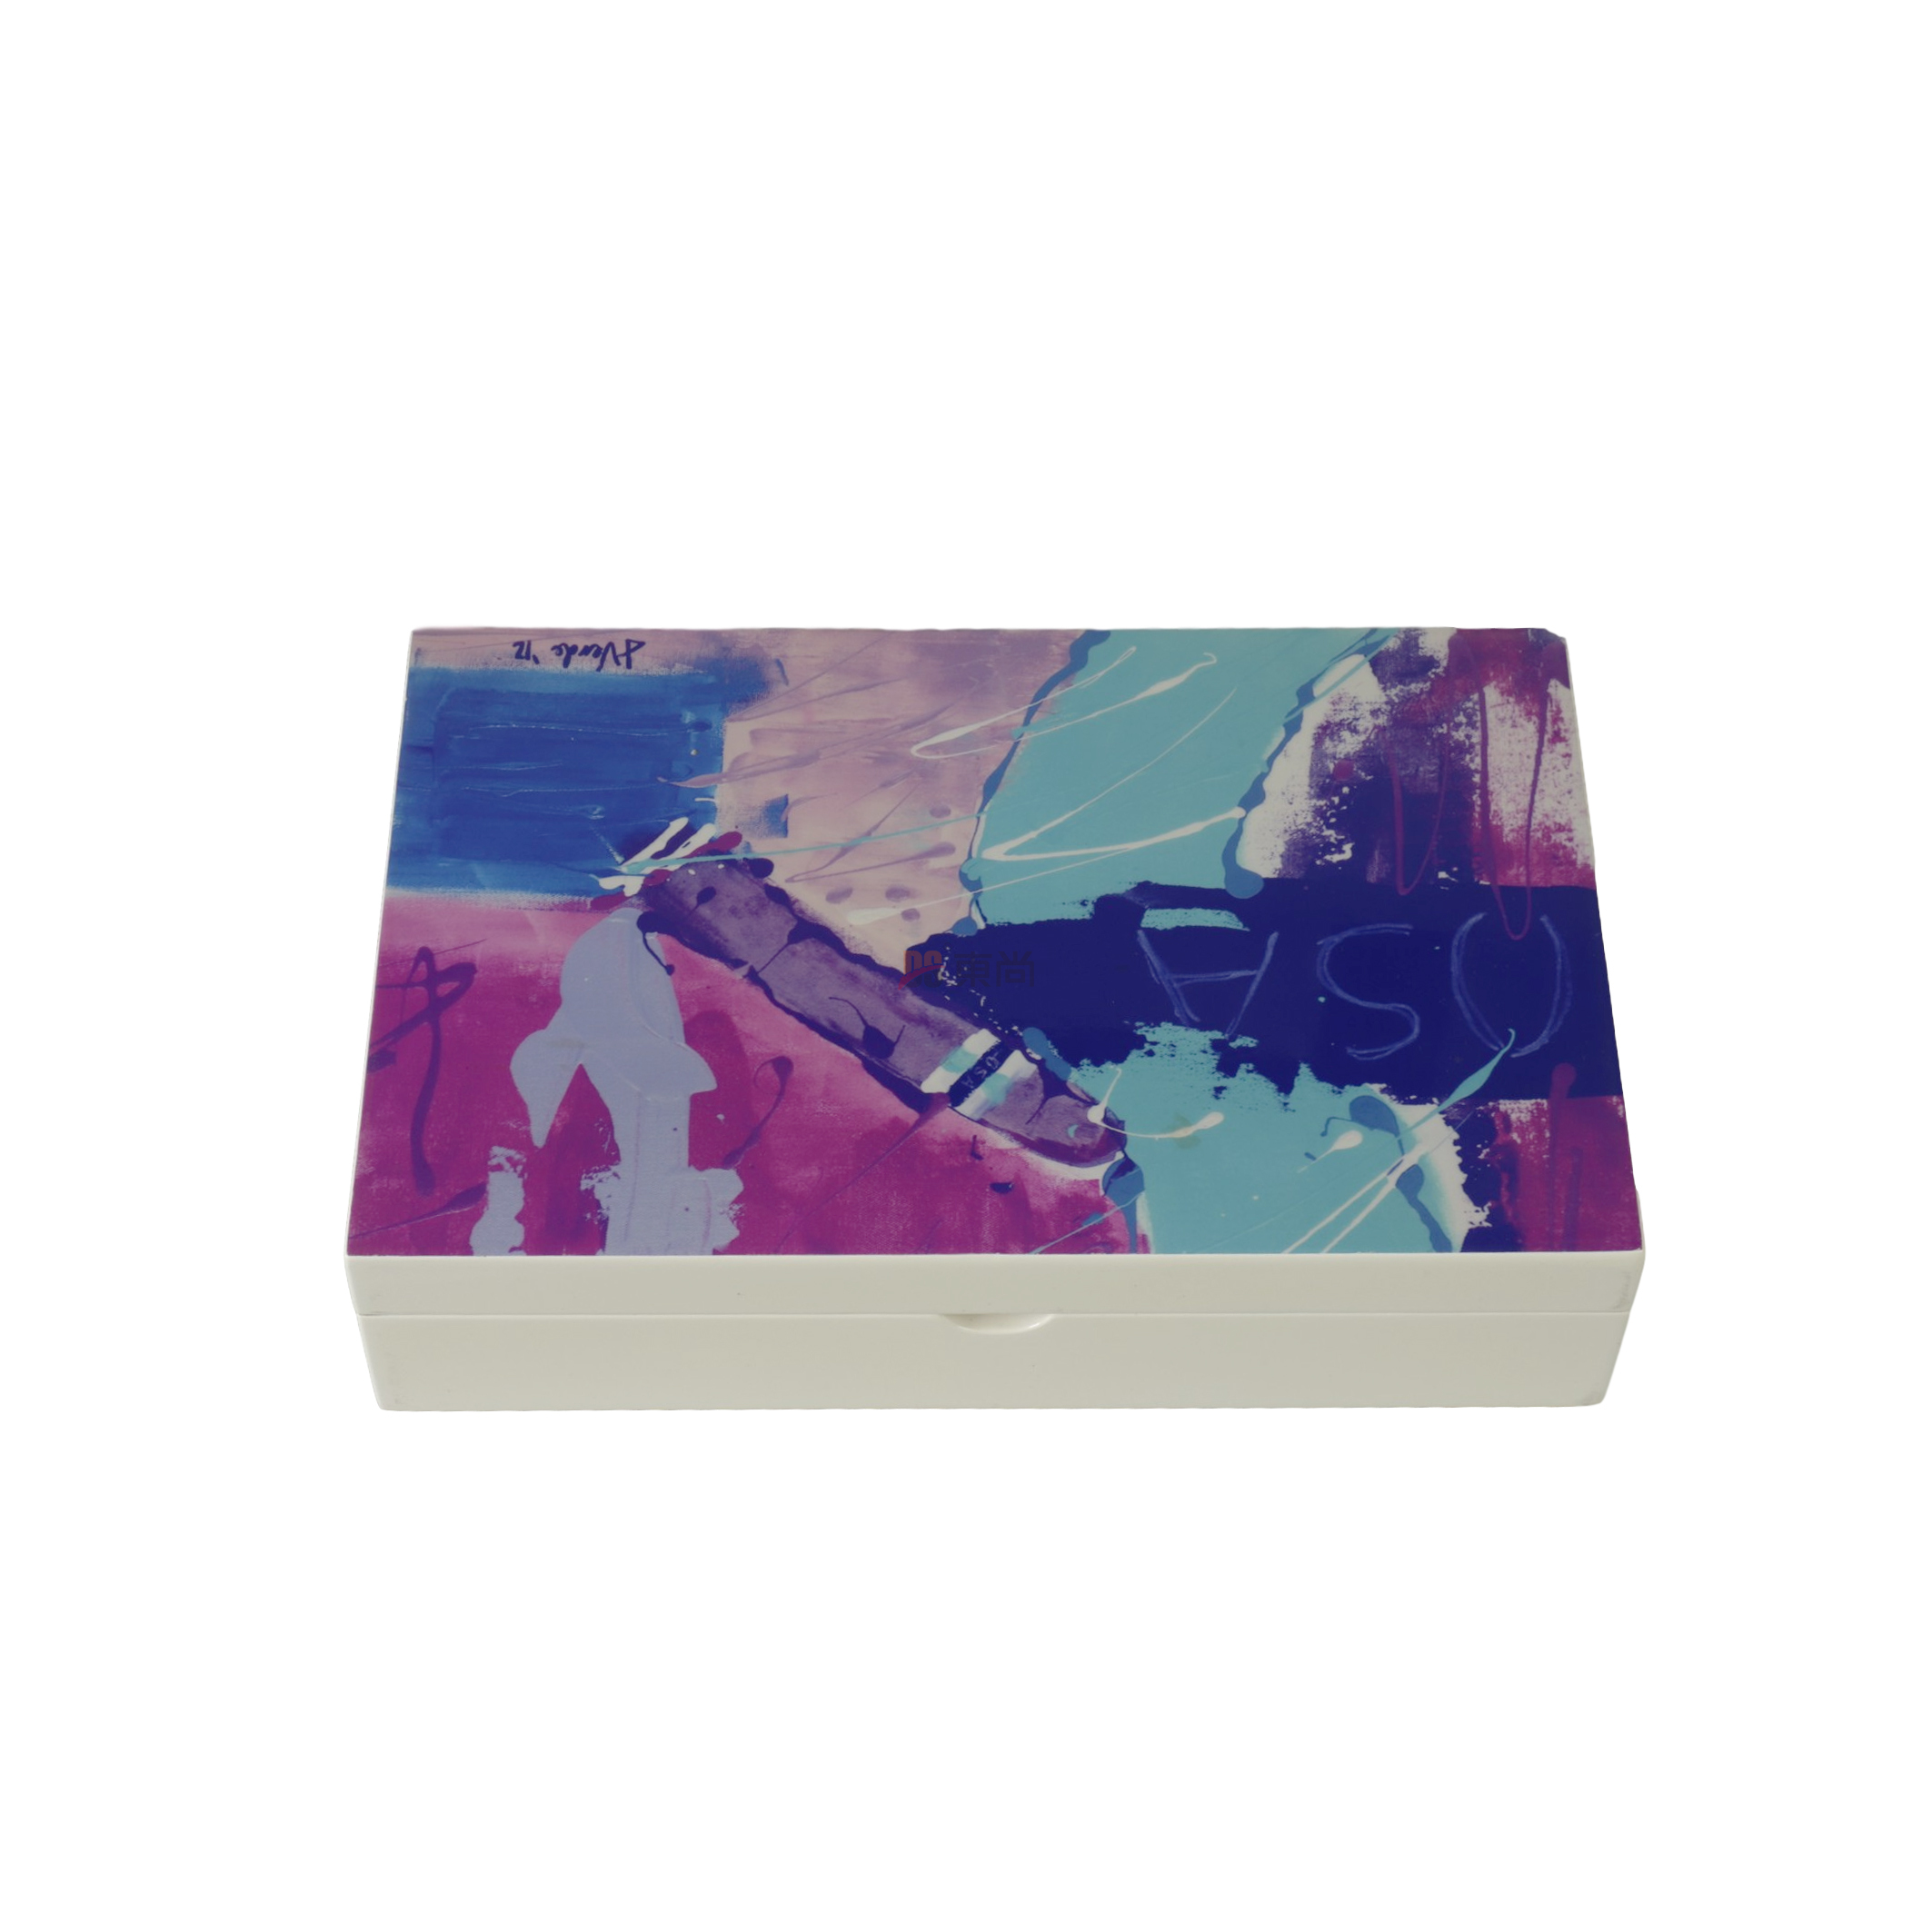 DSC-1010彩色工藝雪松奧古曼保鮮雪茄盒